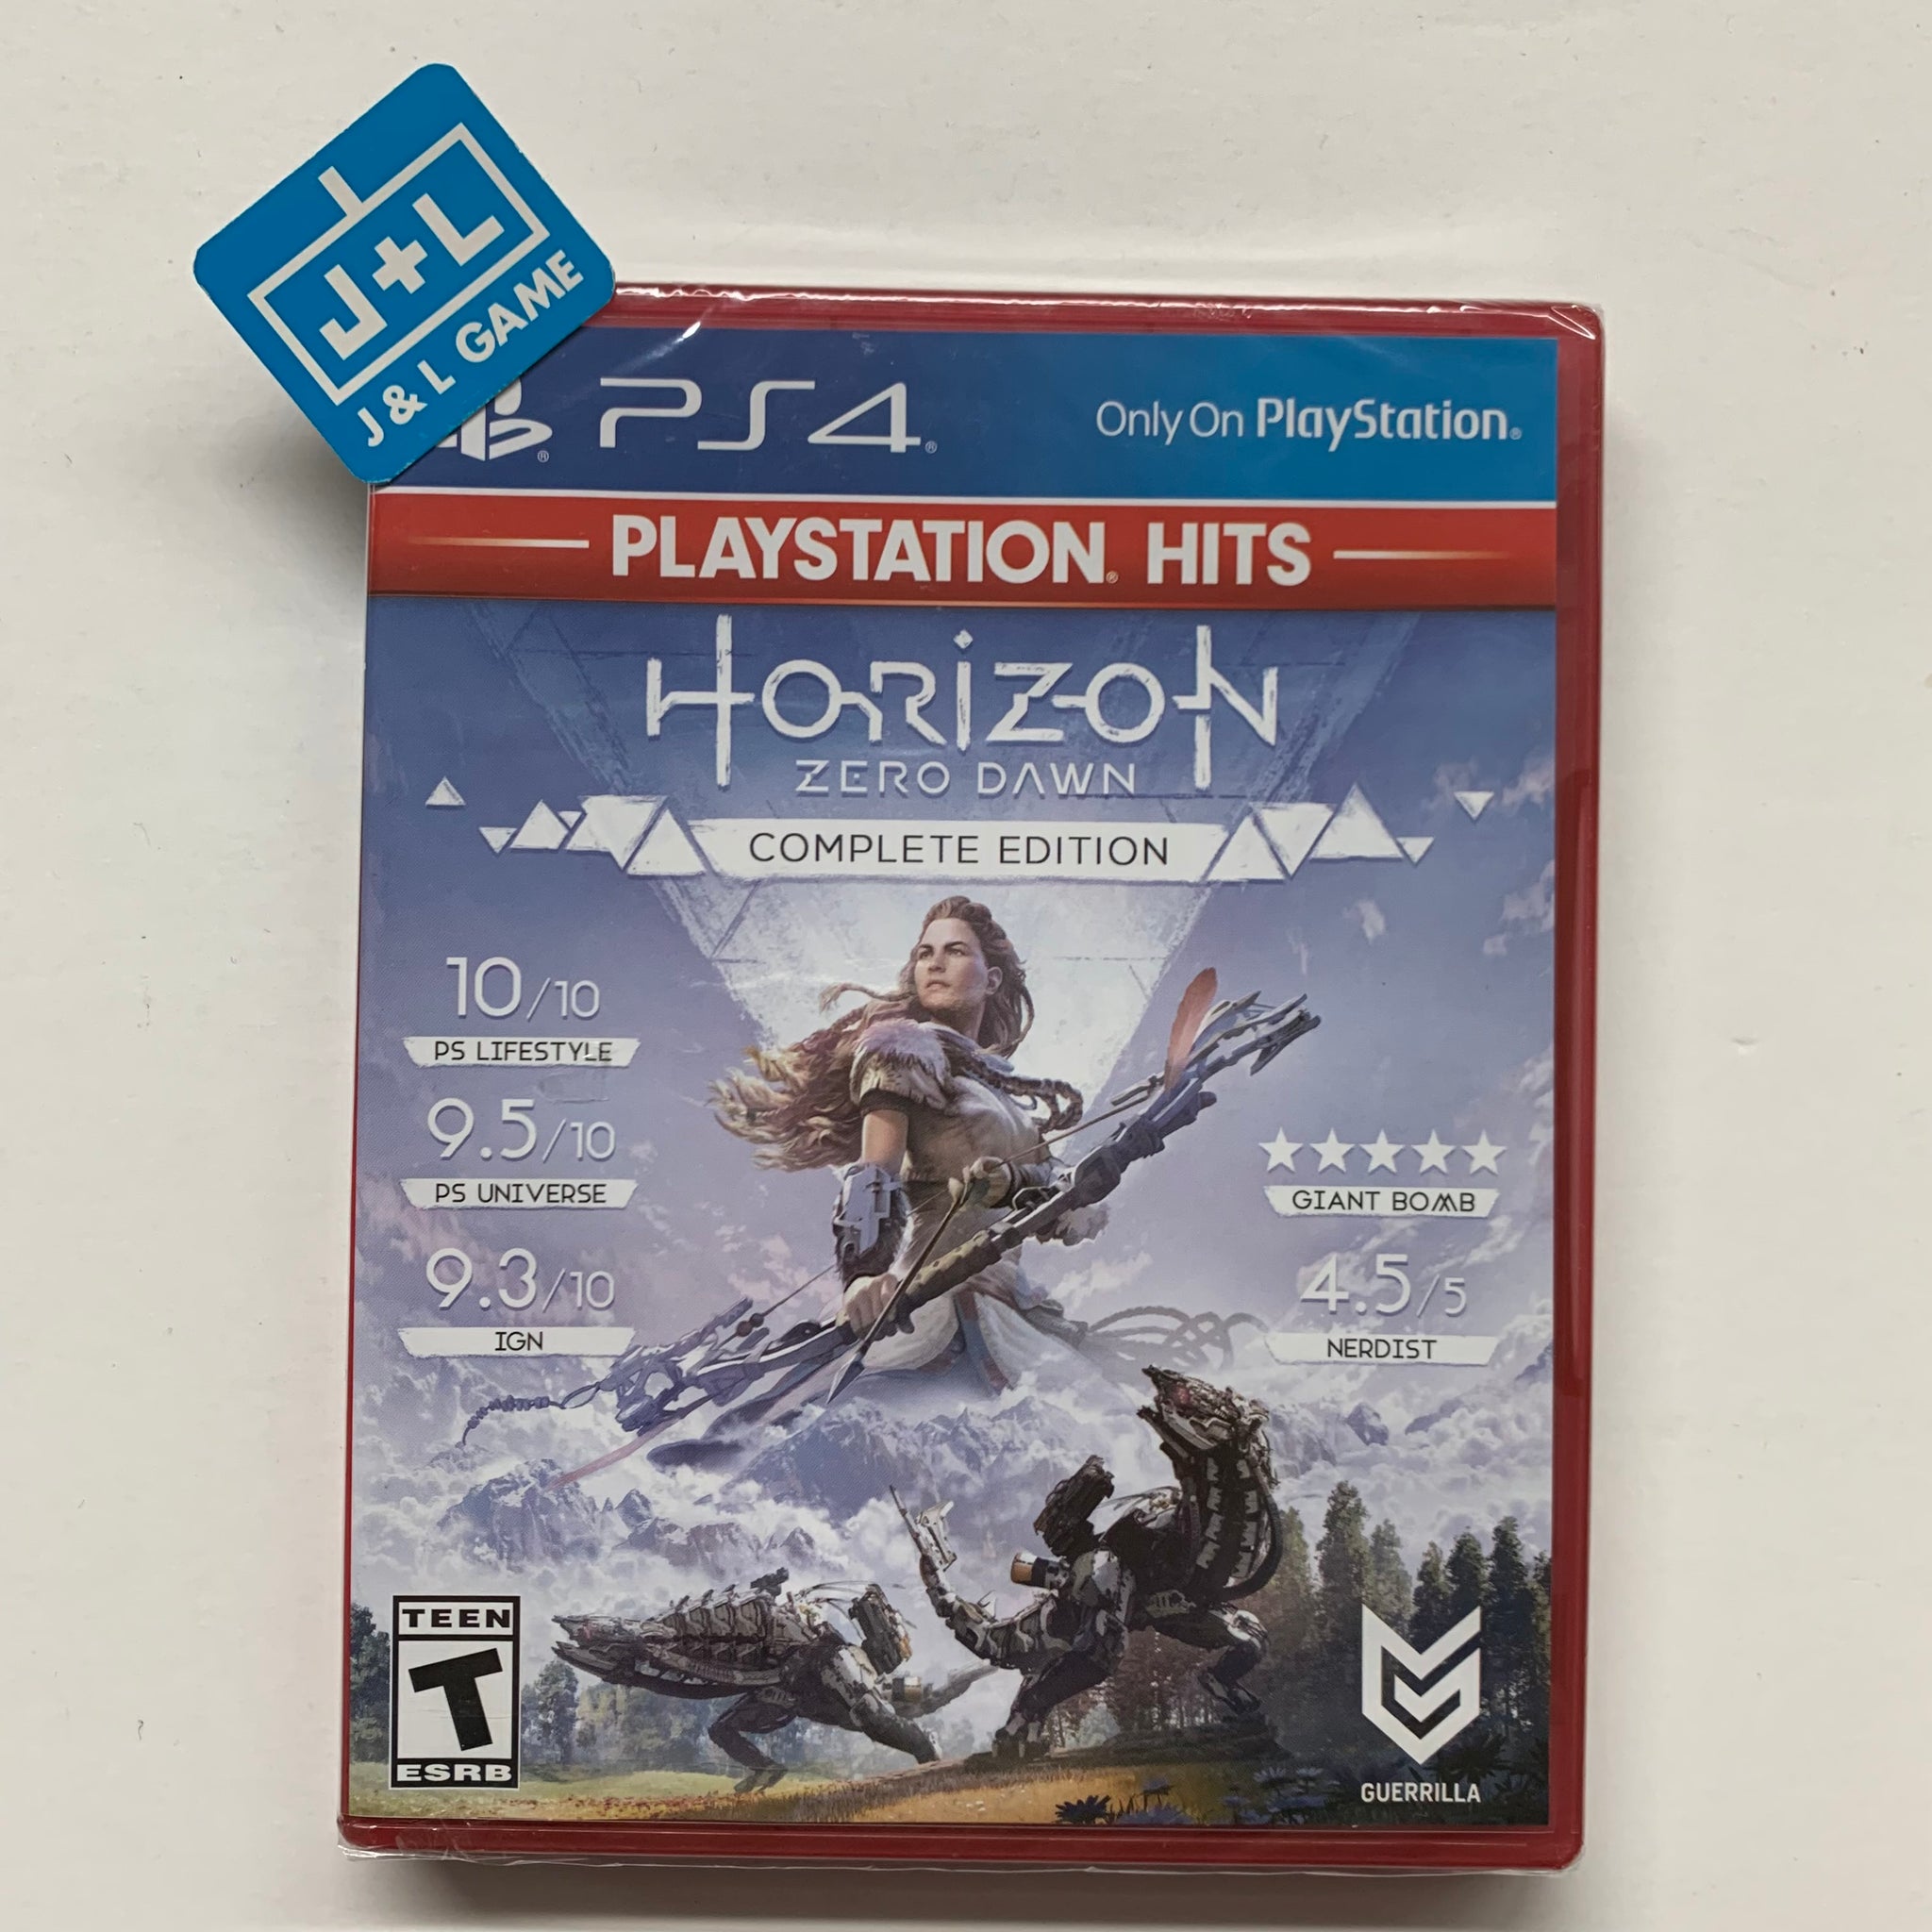 Horizon Zero Dawn Complete Edition gratuito na PS Store